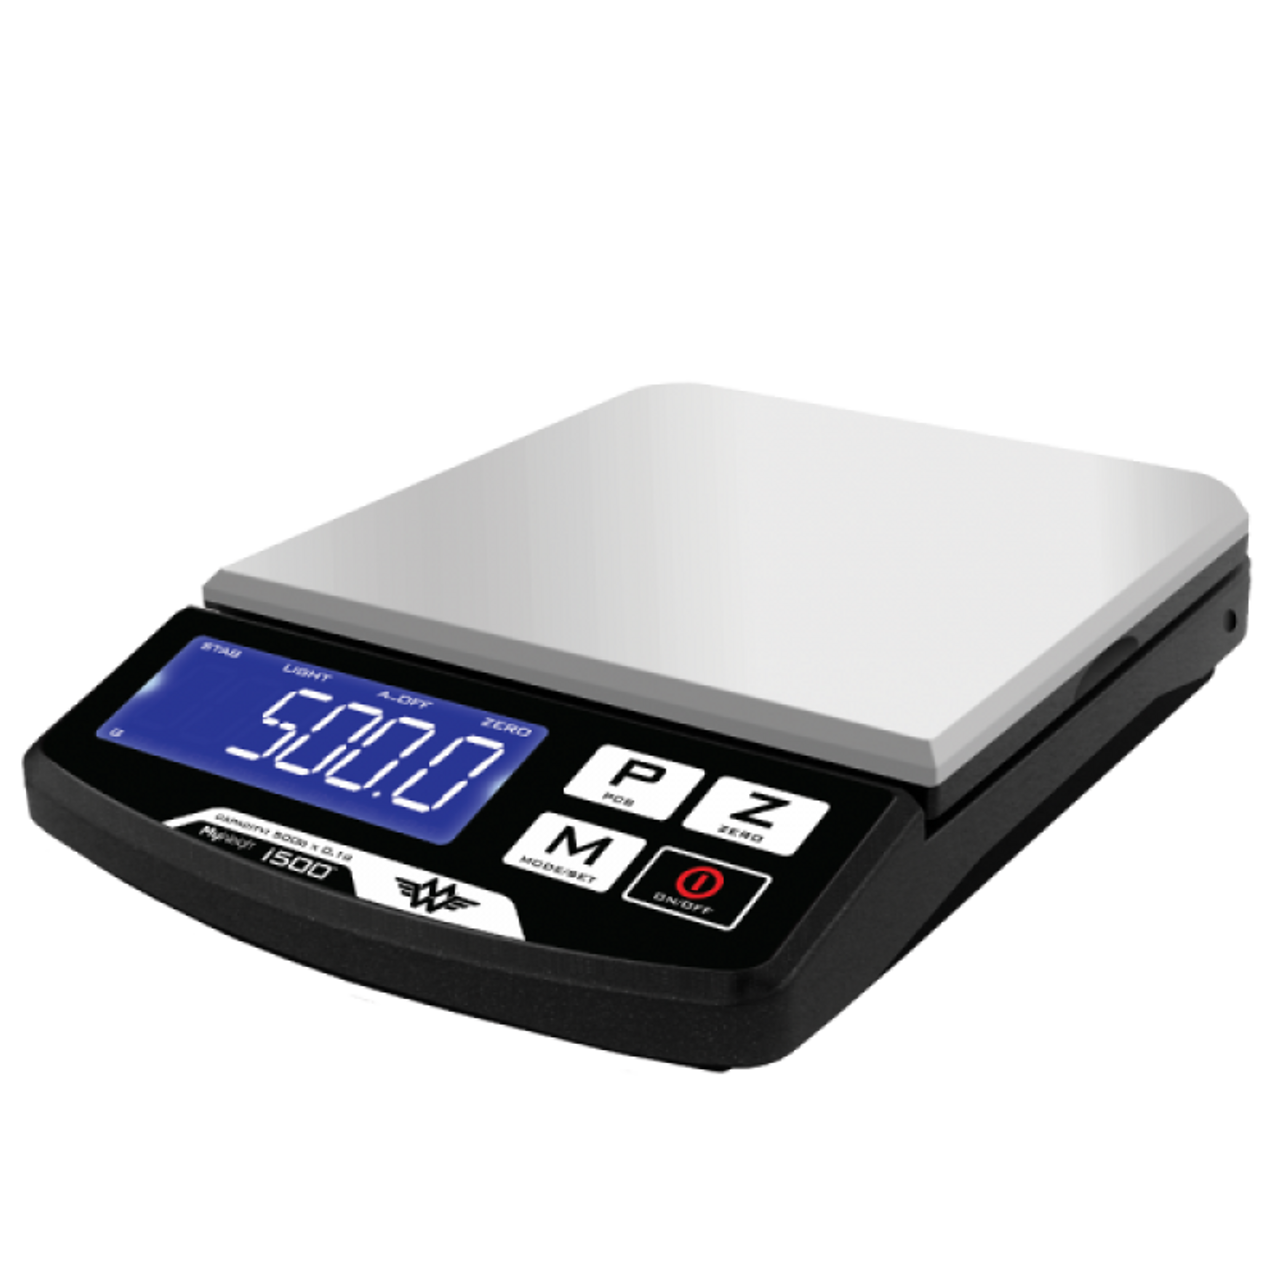 Весы весовые какие. Scale_1200. Весы электронные professional Digital Table Top Scale 500g/0.01g. Весы компактные HT-500 (500*0,1г). Весы and 1200 i.